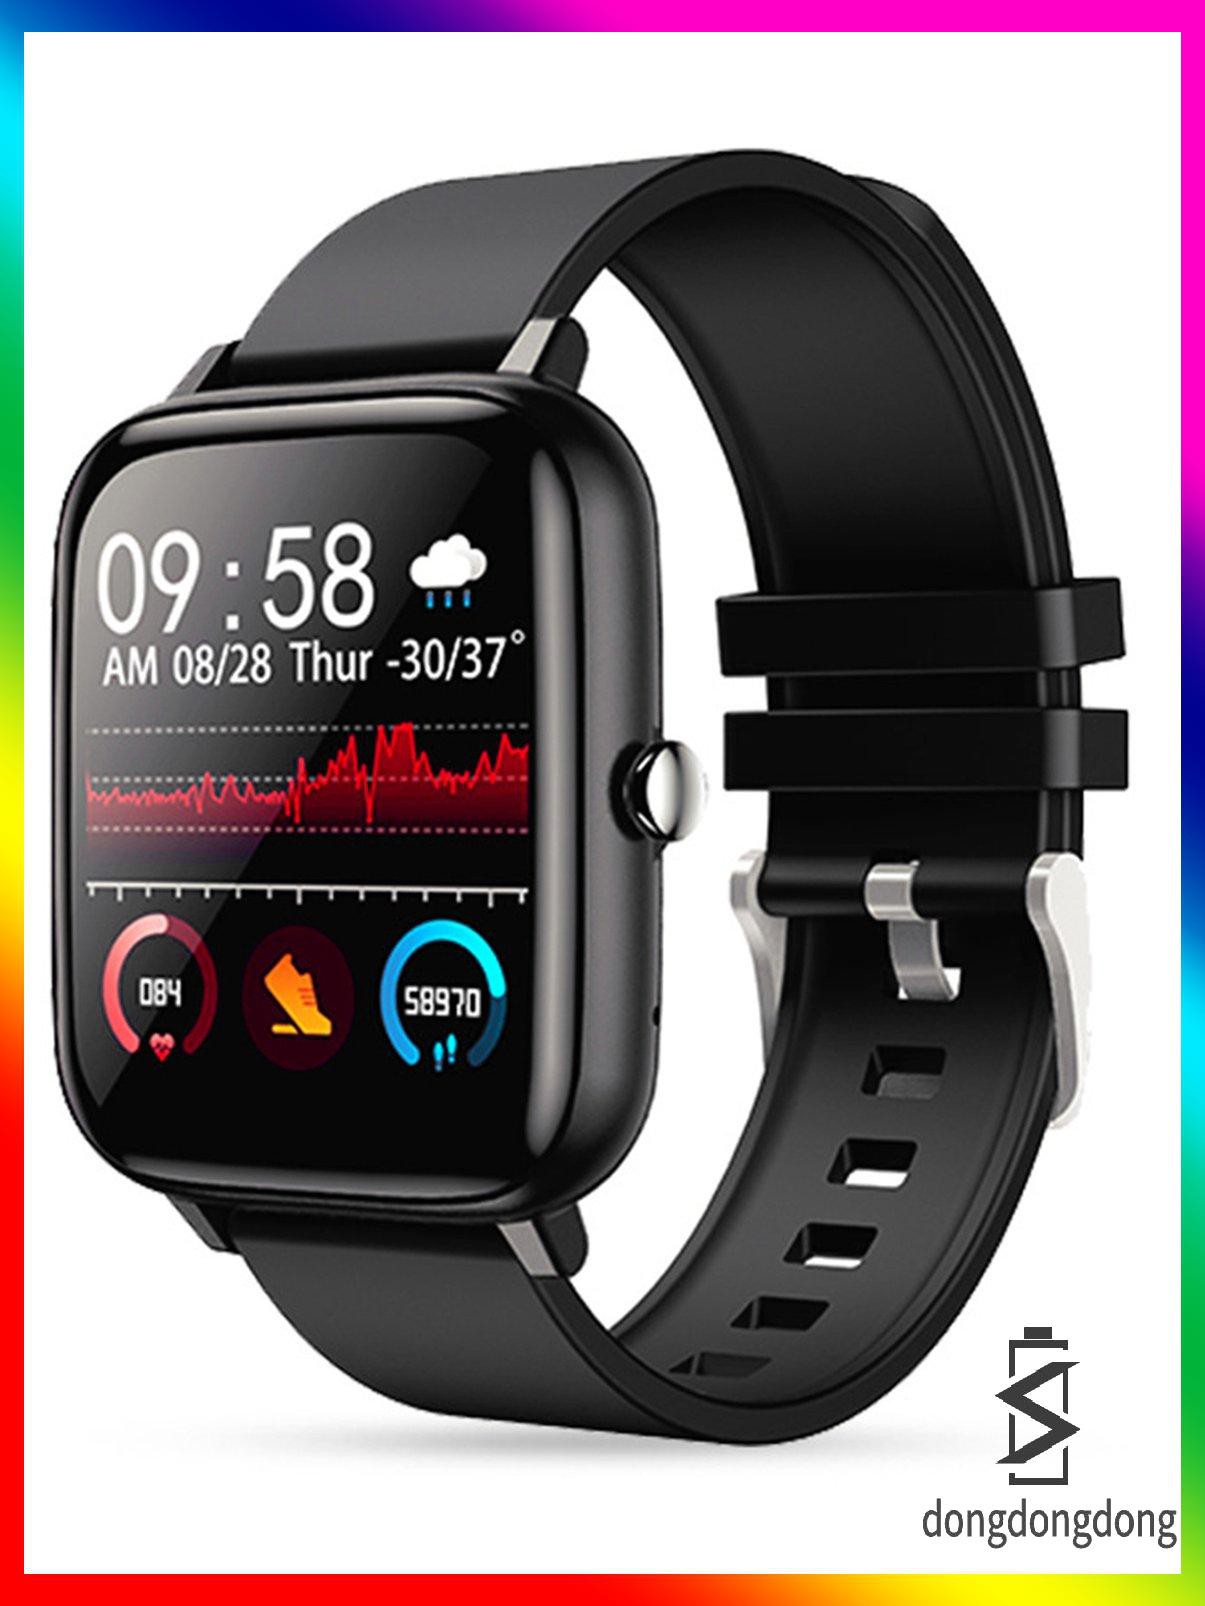 [ddd]Smart Watch Waterproof Full Touch Screen Wireless Fitness Tracker Sports Watch